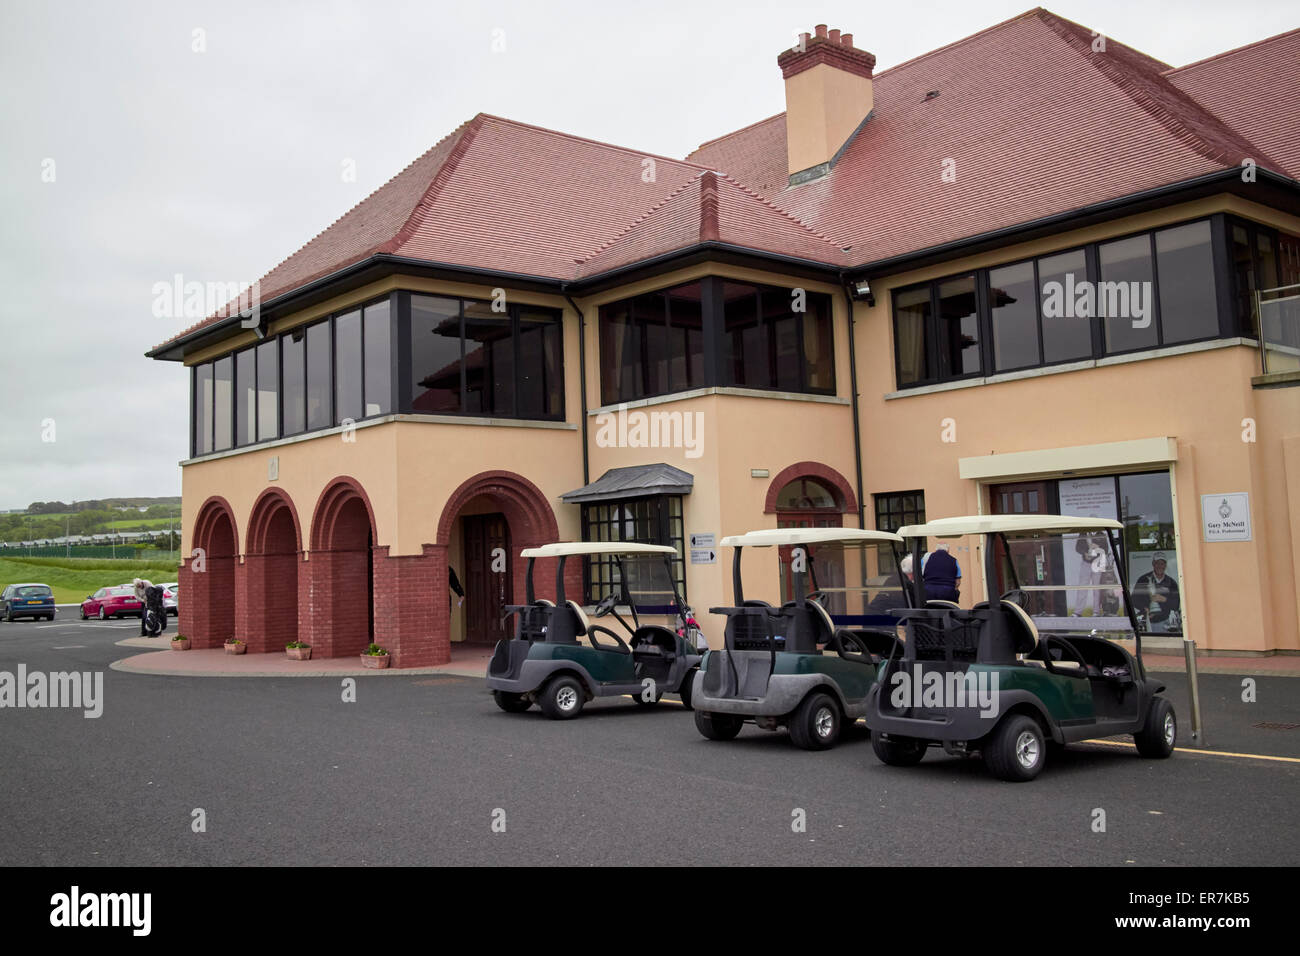 El Club de Golf Royal Portrush clubhouse Irlanda del Norte Foto de stock